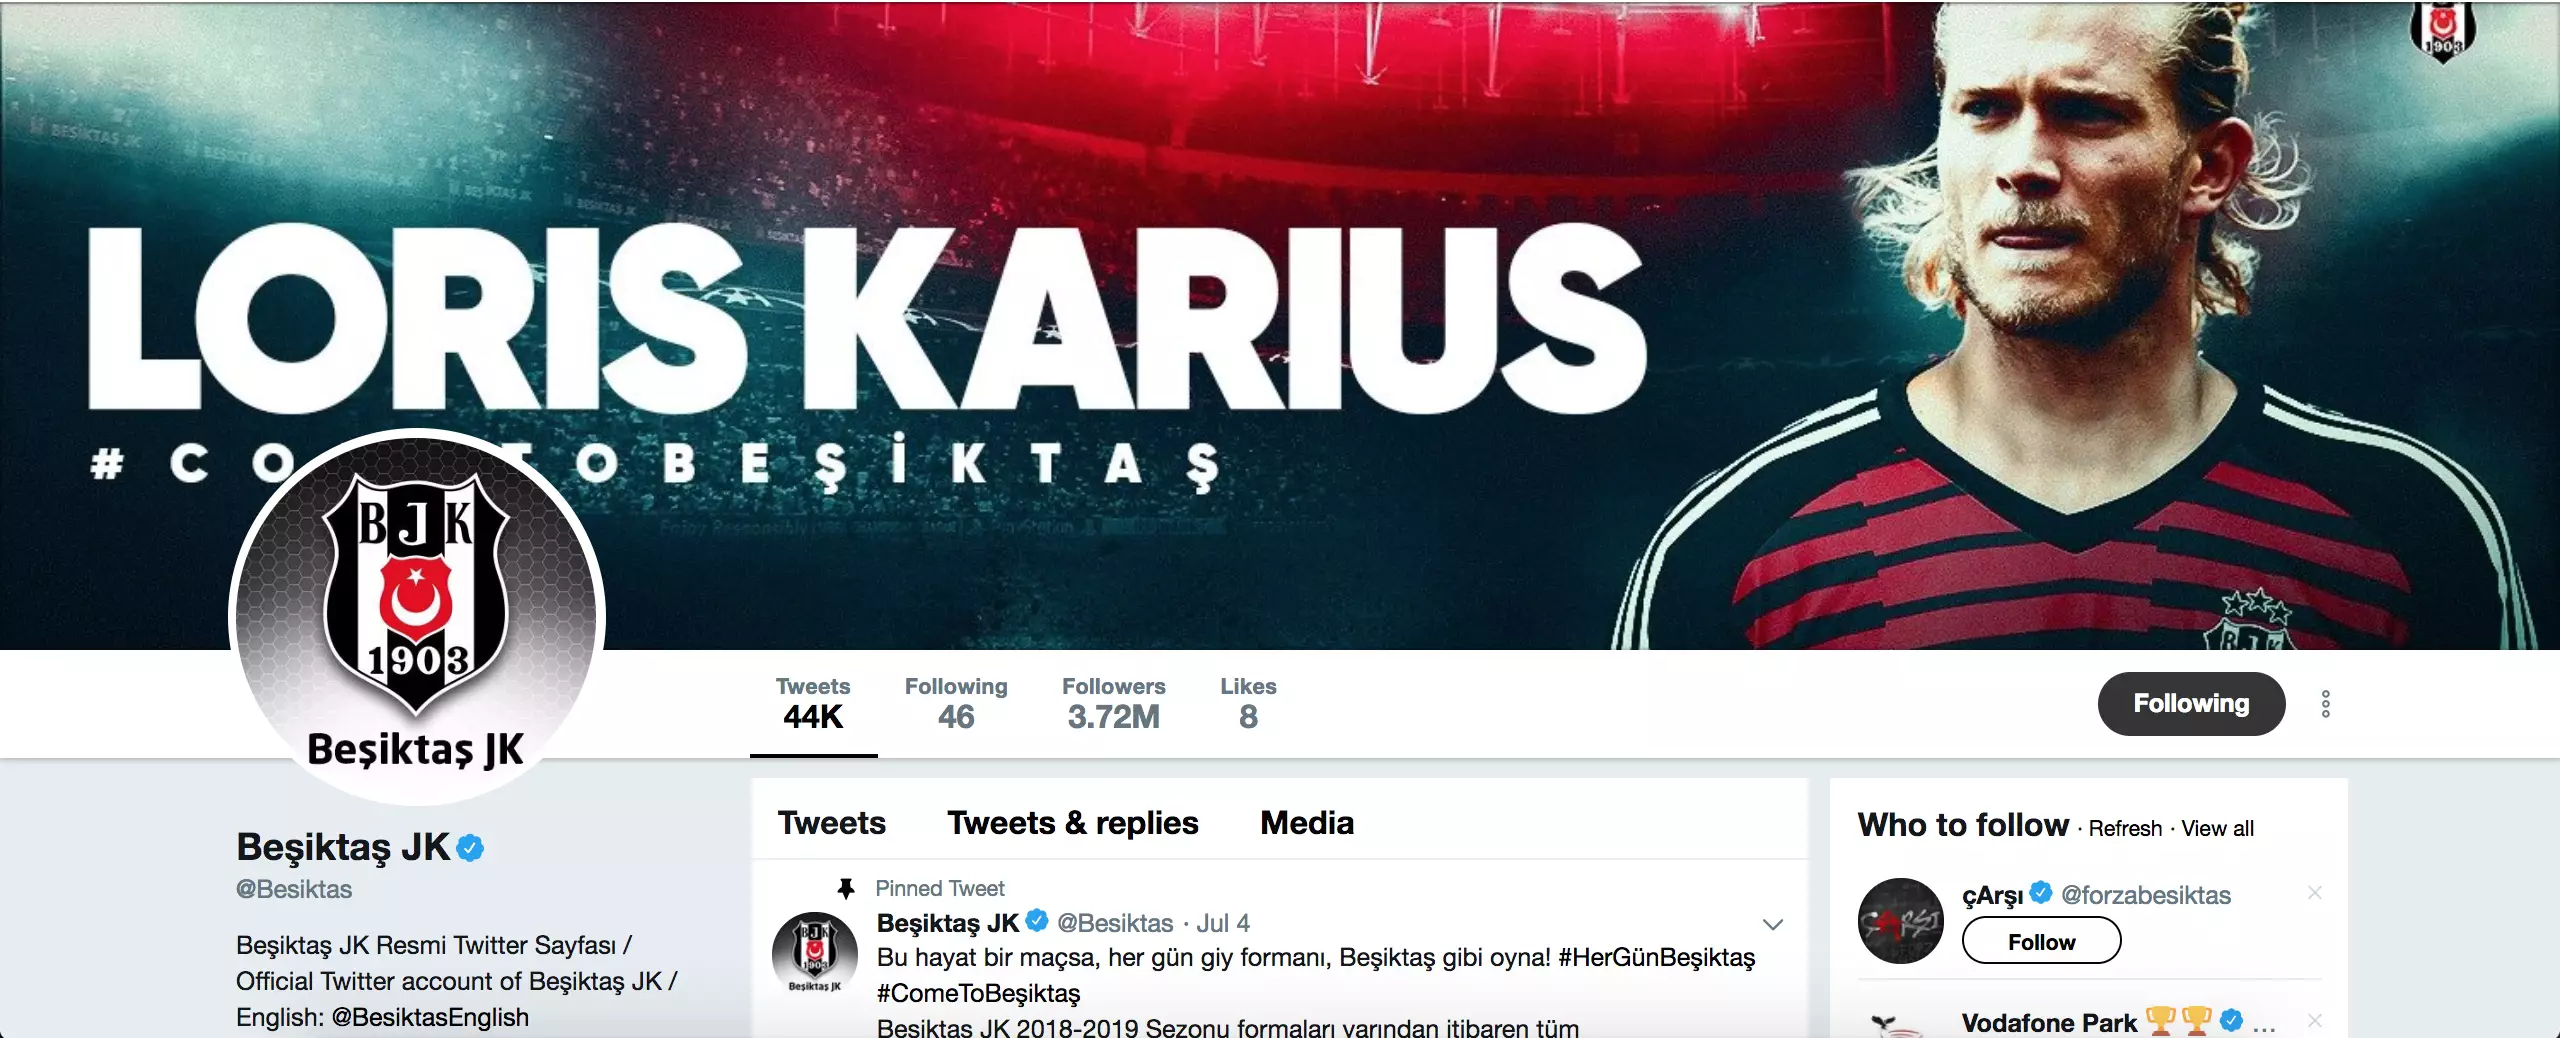 Karius to Besiktas is on the near horizon. Image: Twitter